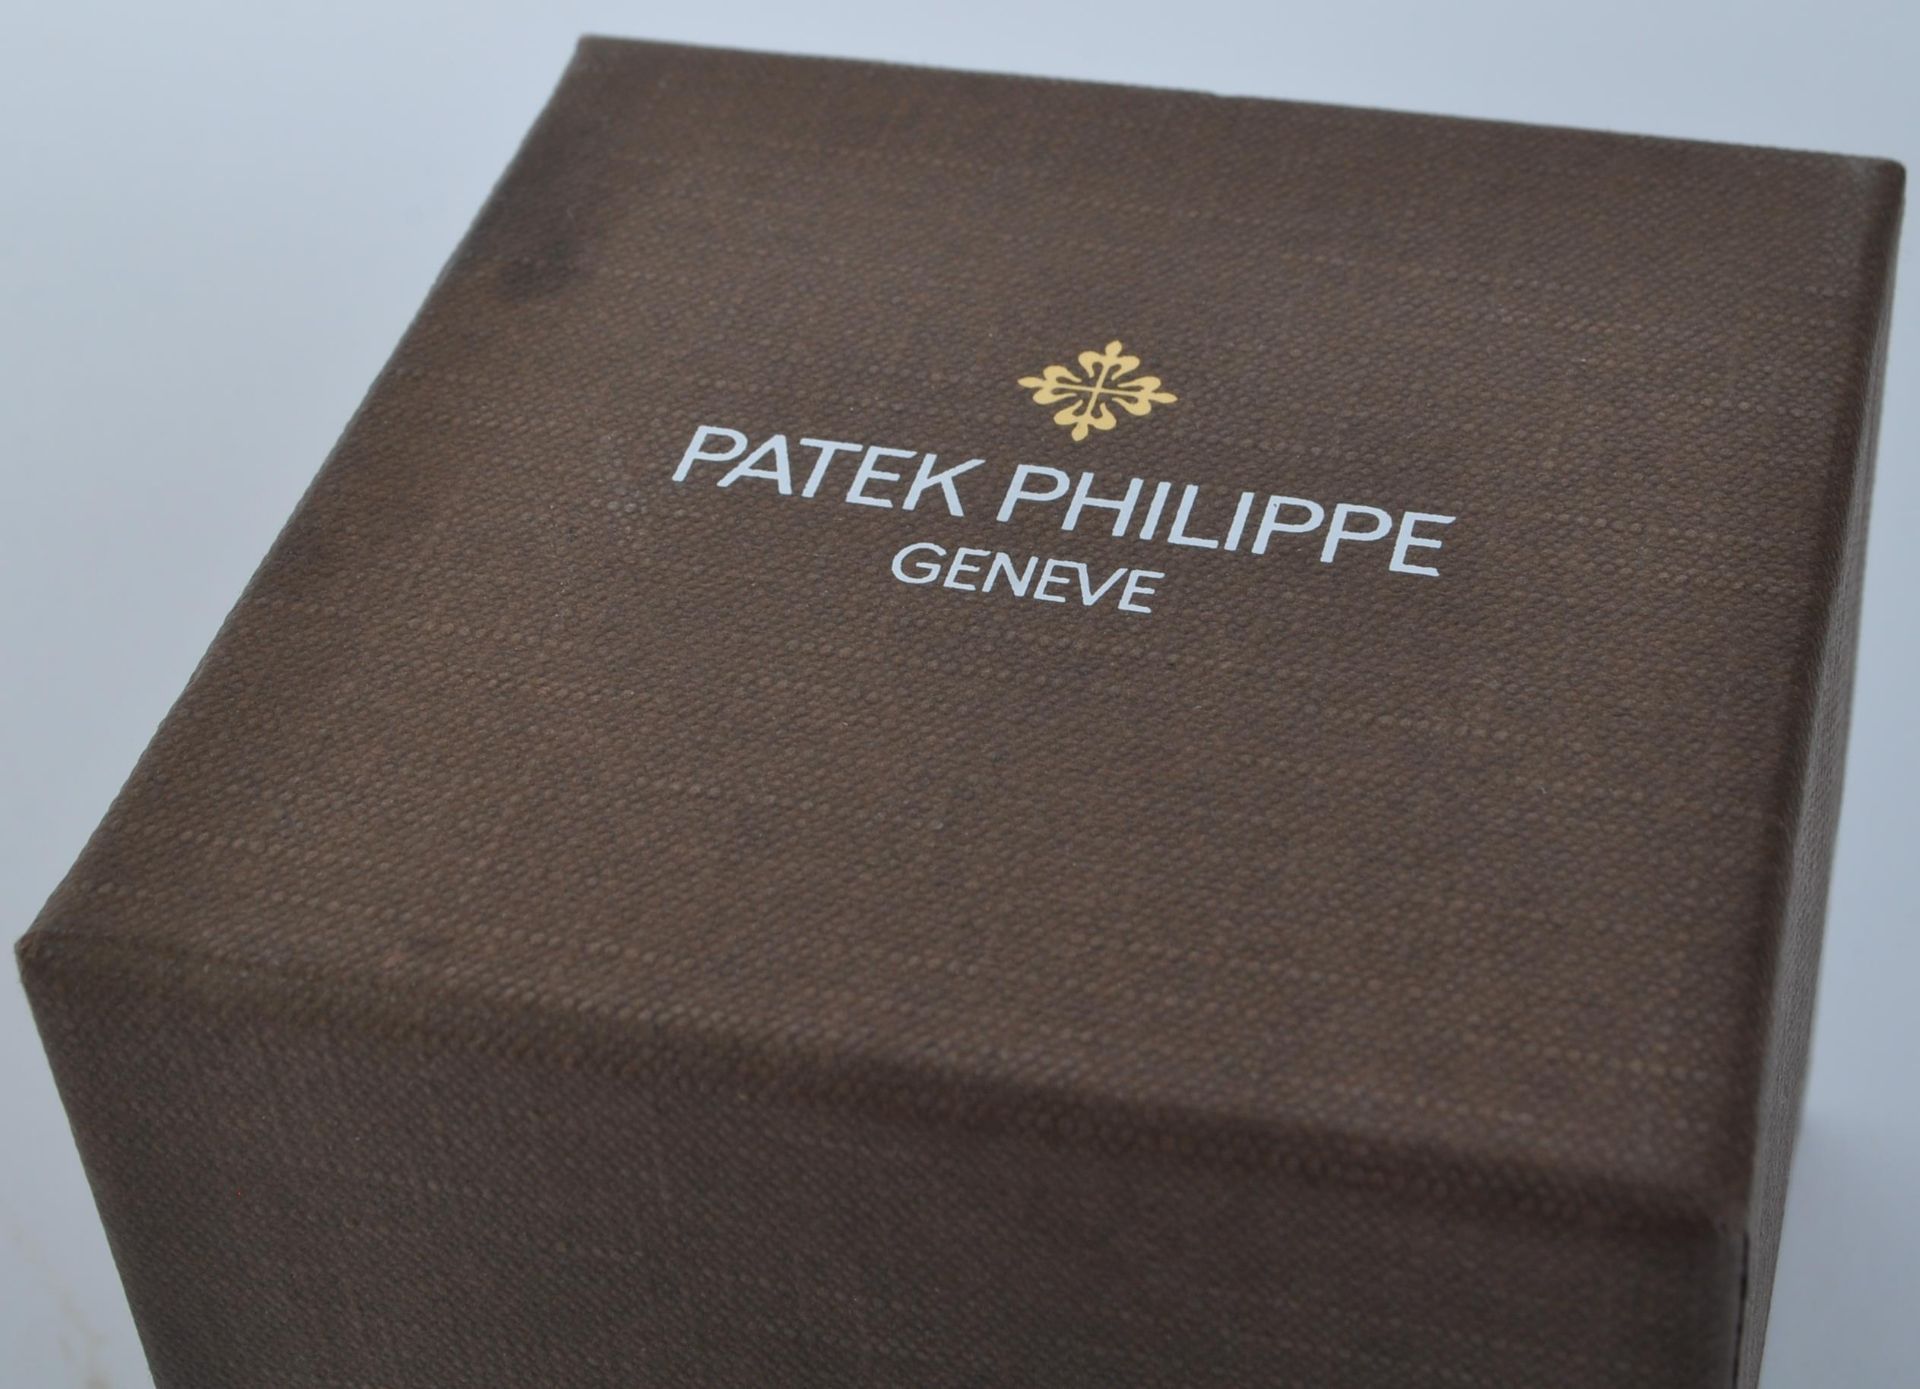 PHILLIPE PATEK GENEVE 2018 BURGUNDY TIE IN BOX - Image 3 of 4